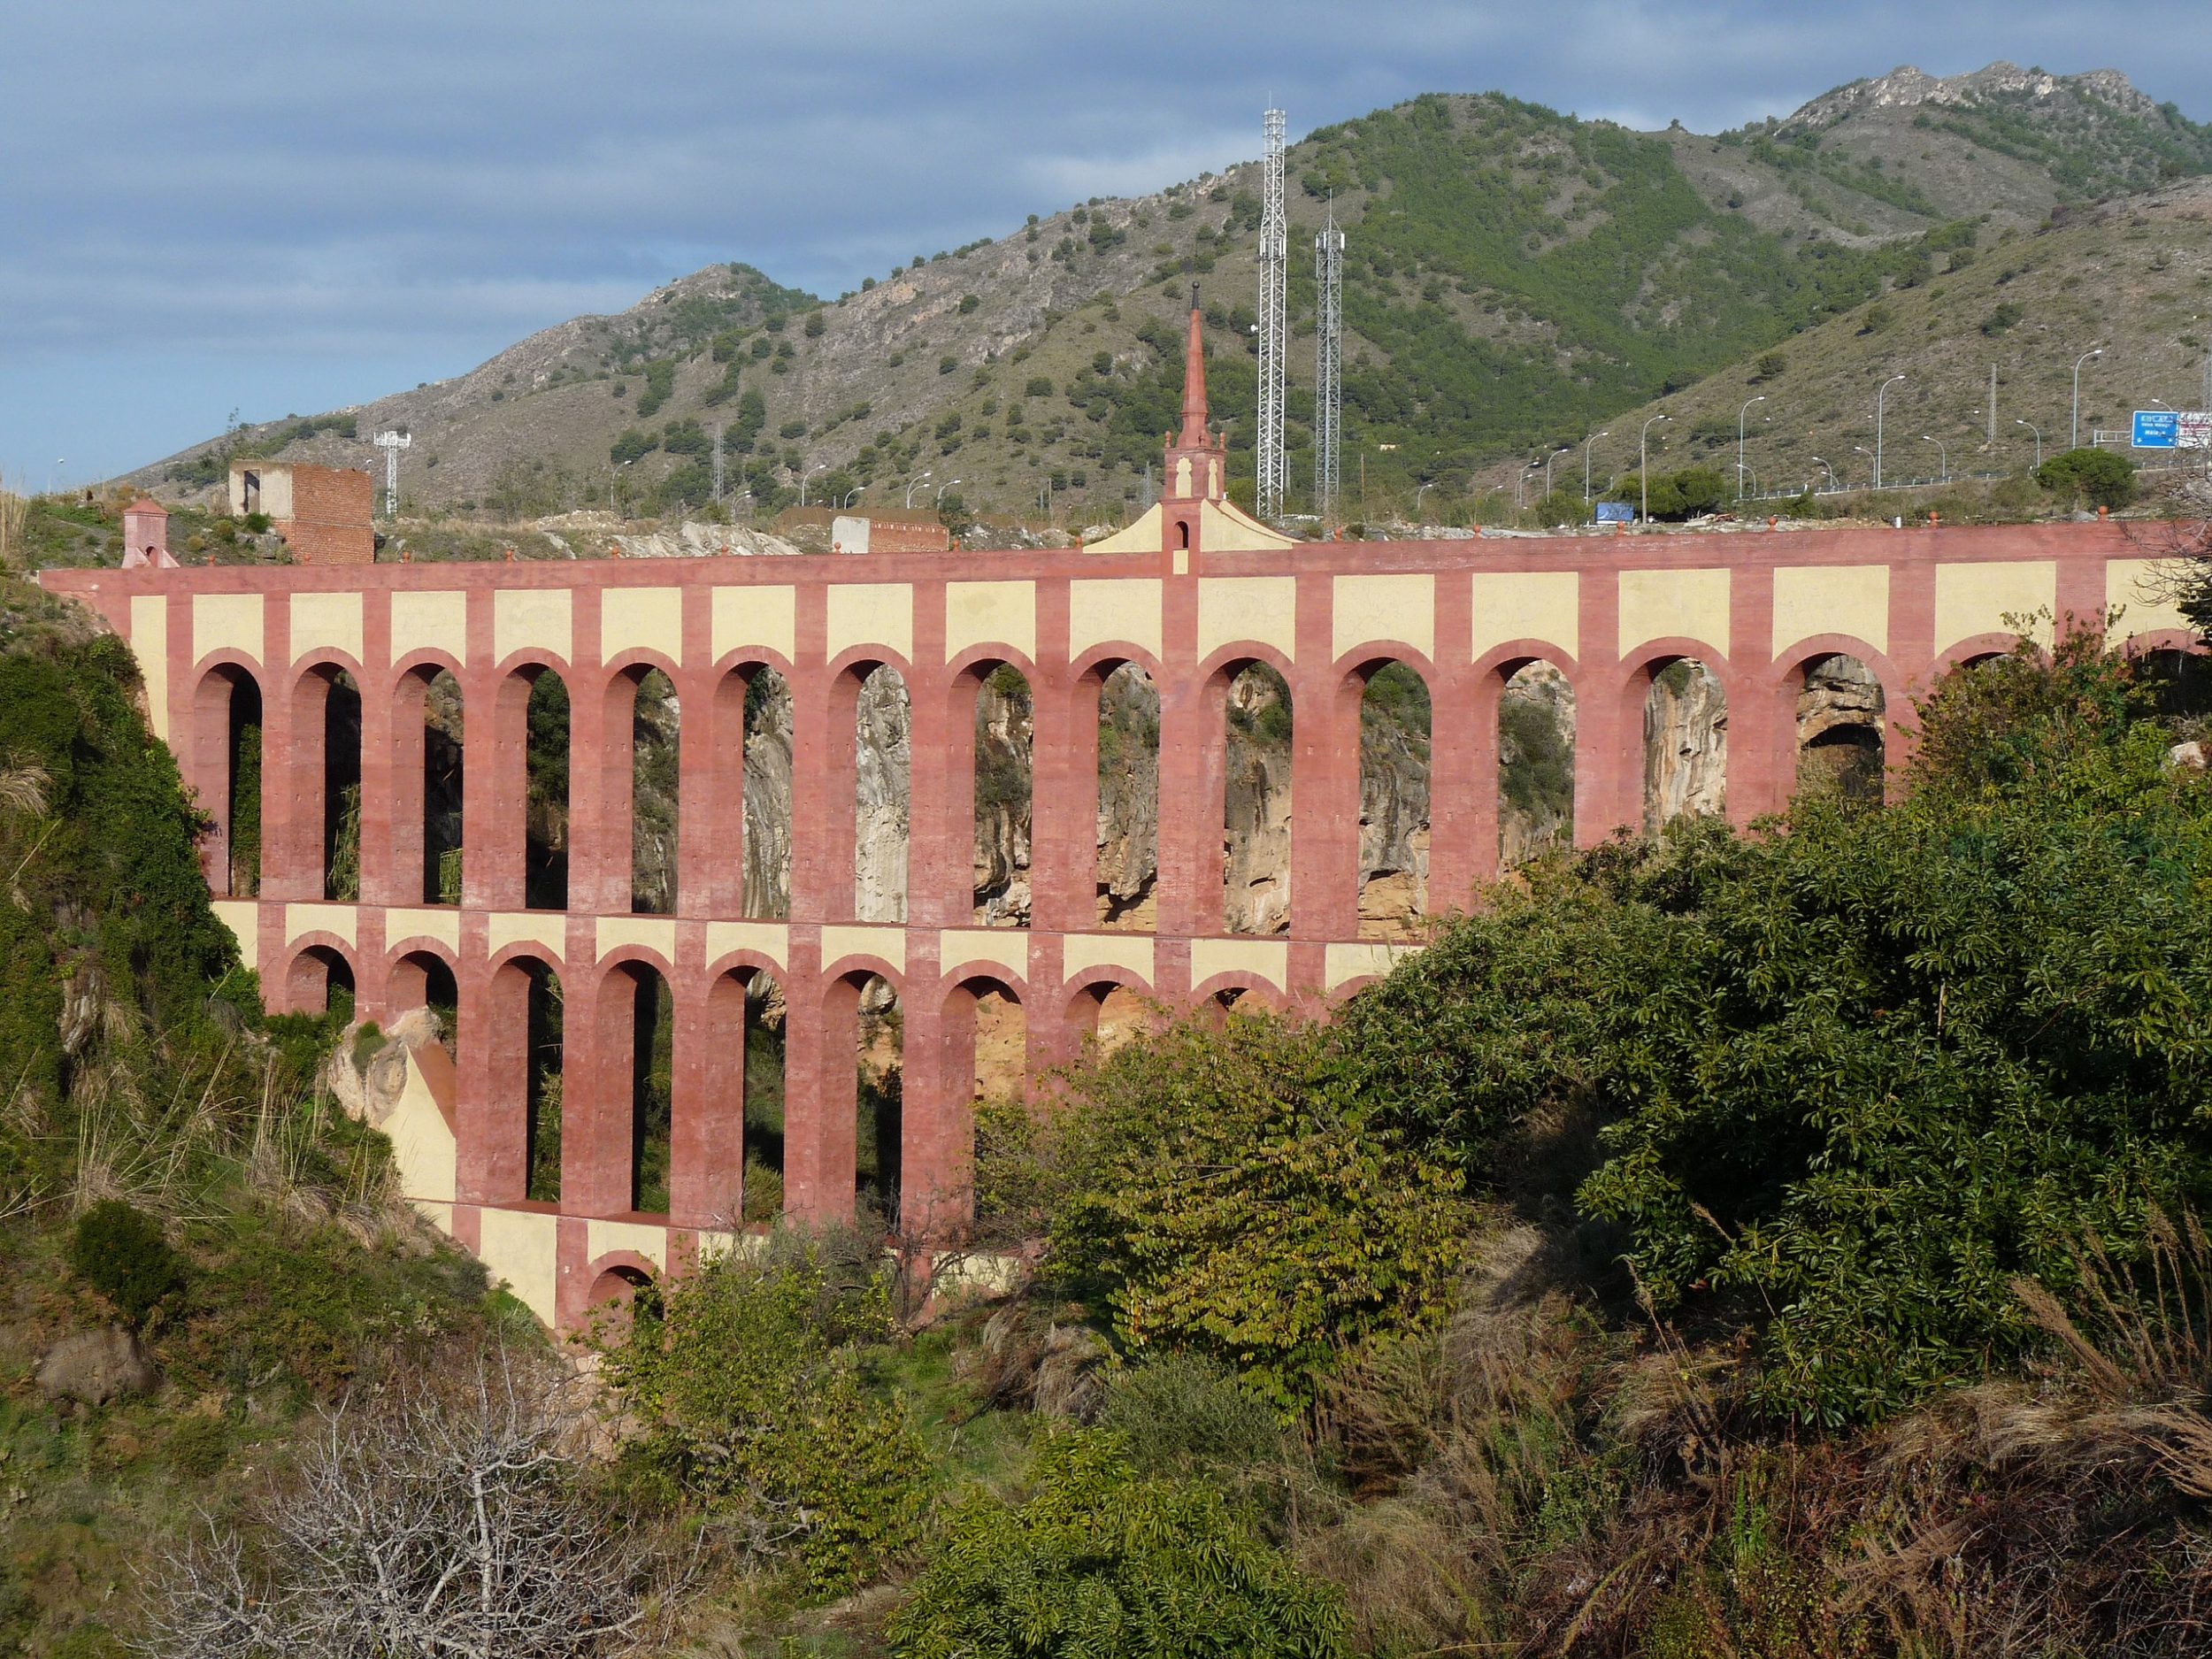 Lang verblijf Nerja oude aquaduct als illustratie